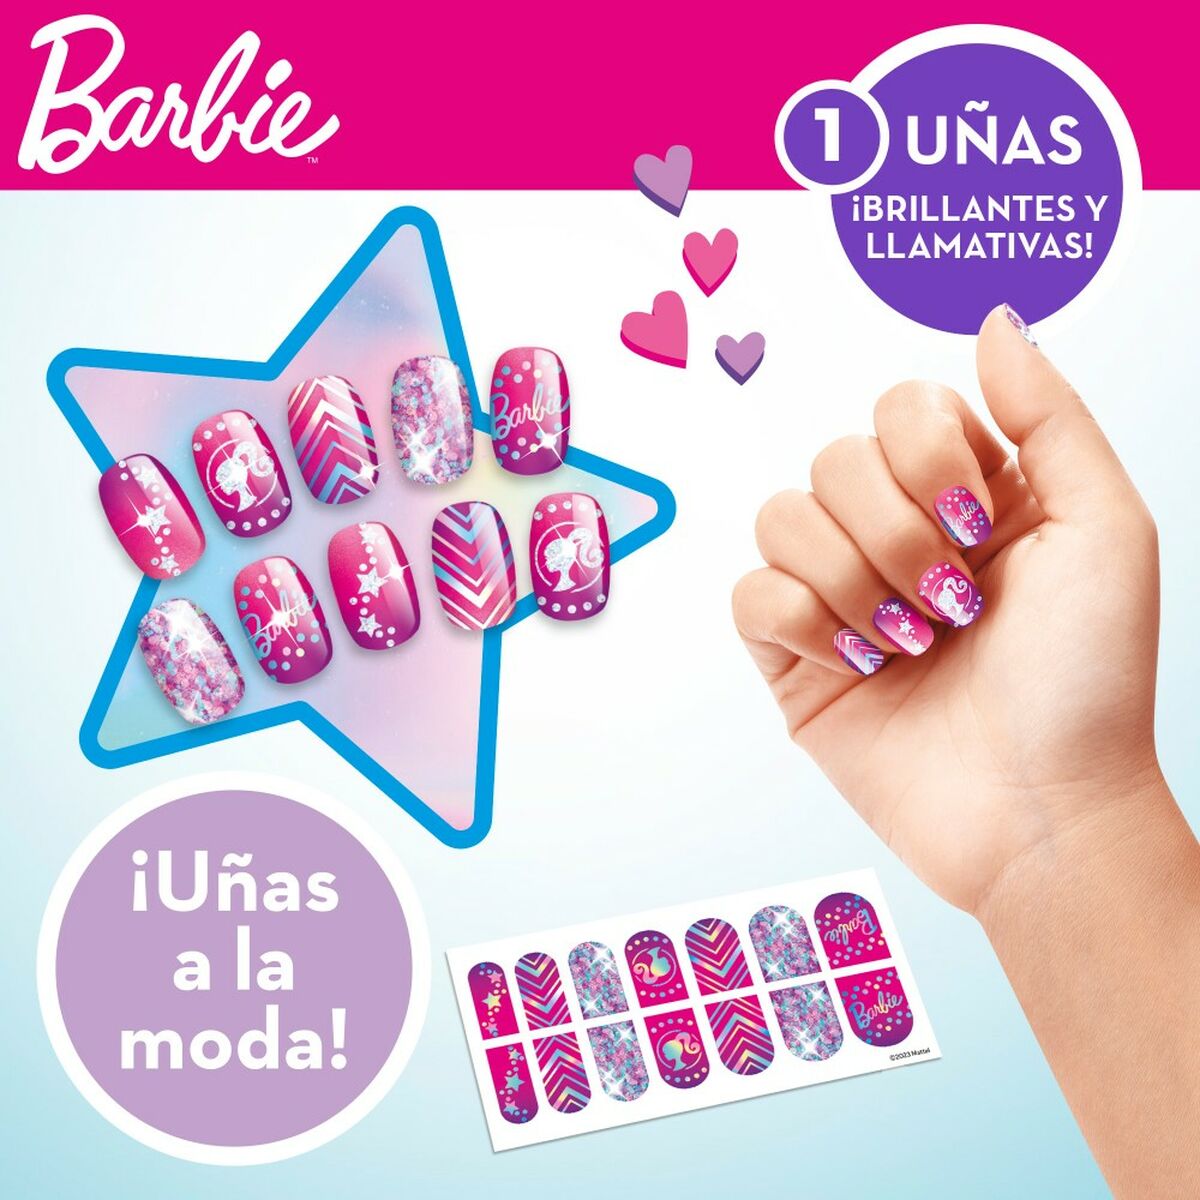 Skjønnhetssett Barbie Sparkling 2 x 13 x 2 cm 3-i-1